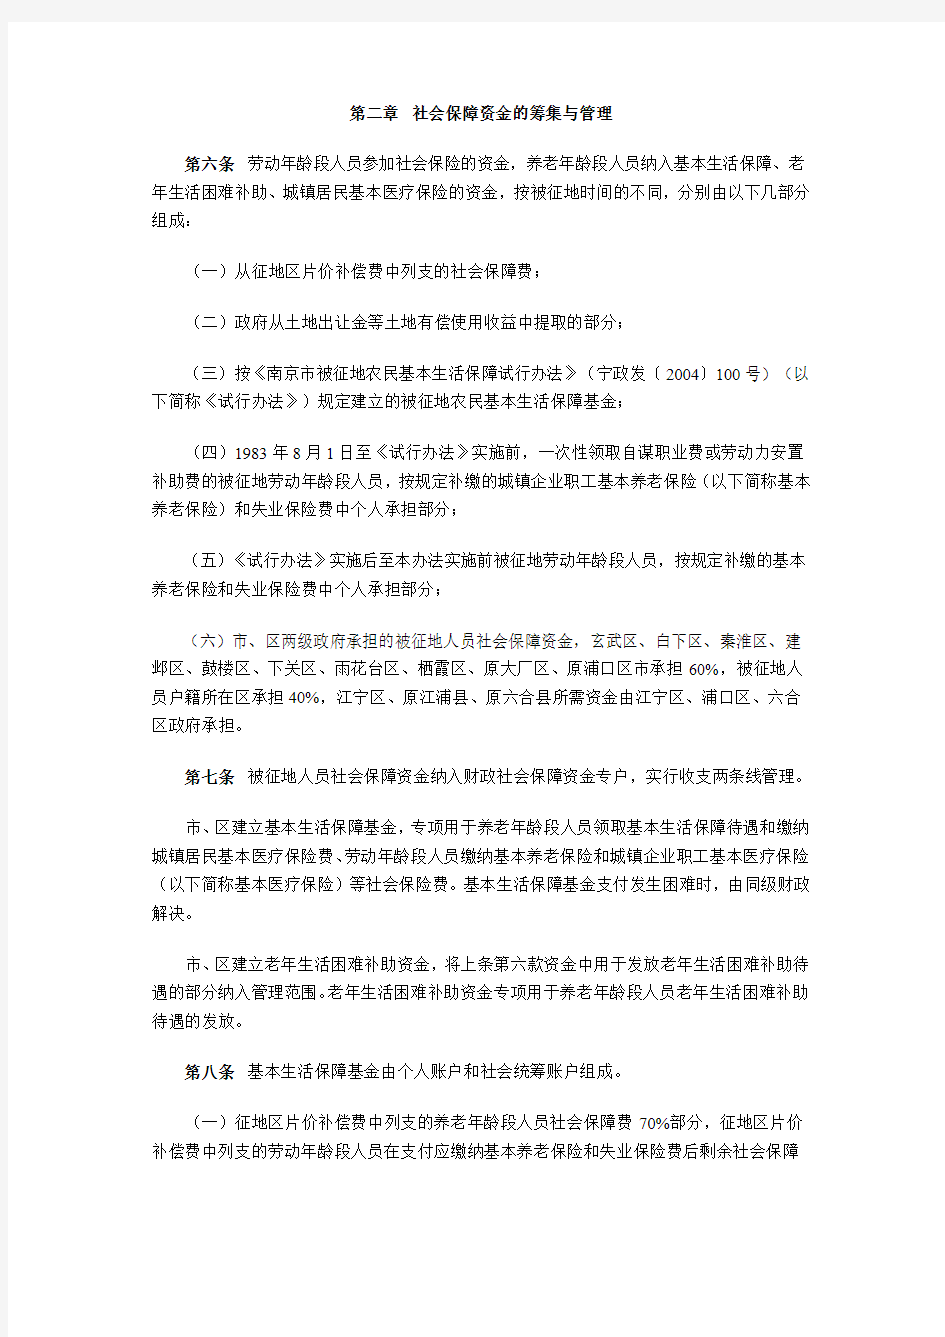 市政府关于印发南京市被征地人员社会保障办法的通知